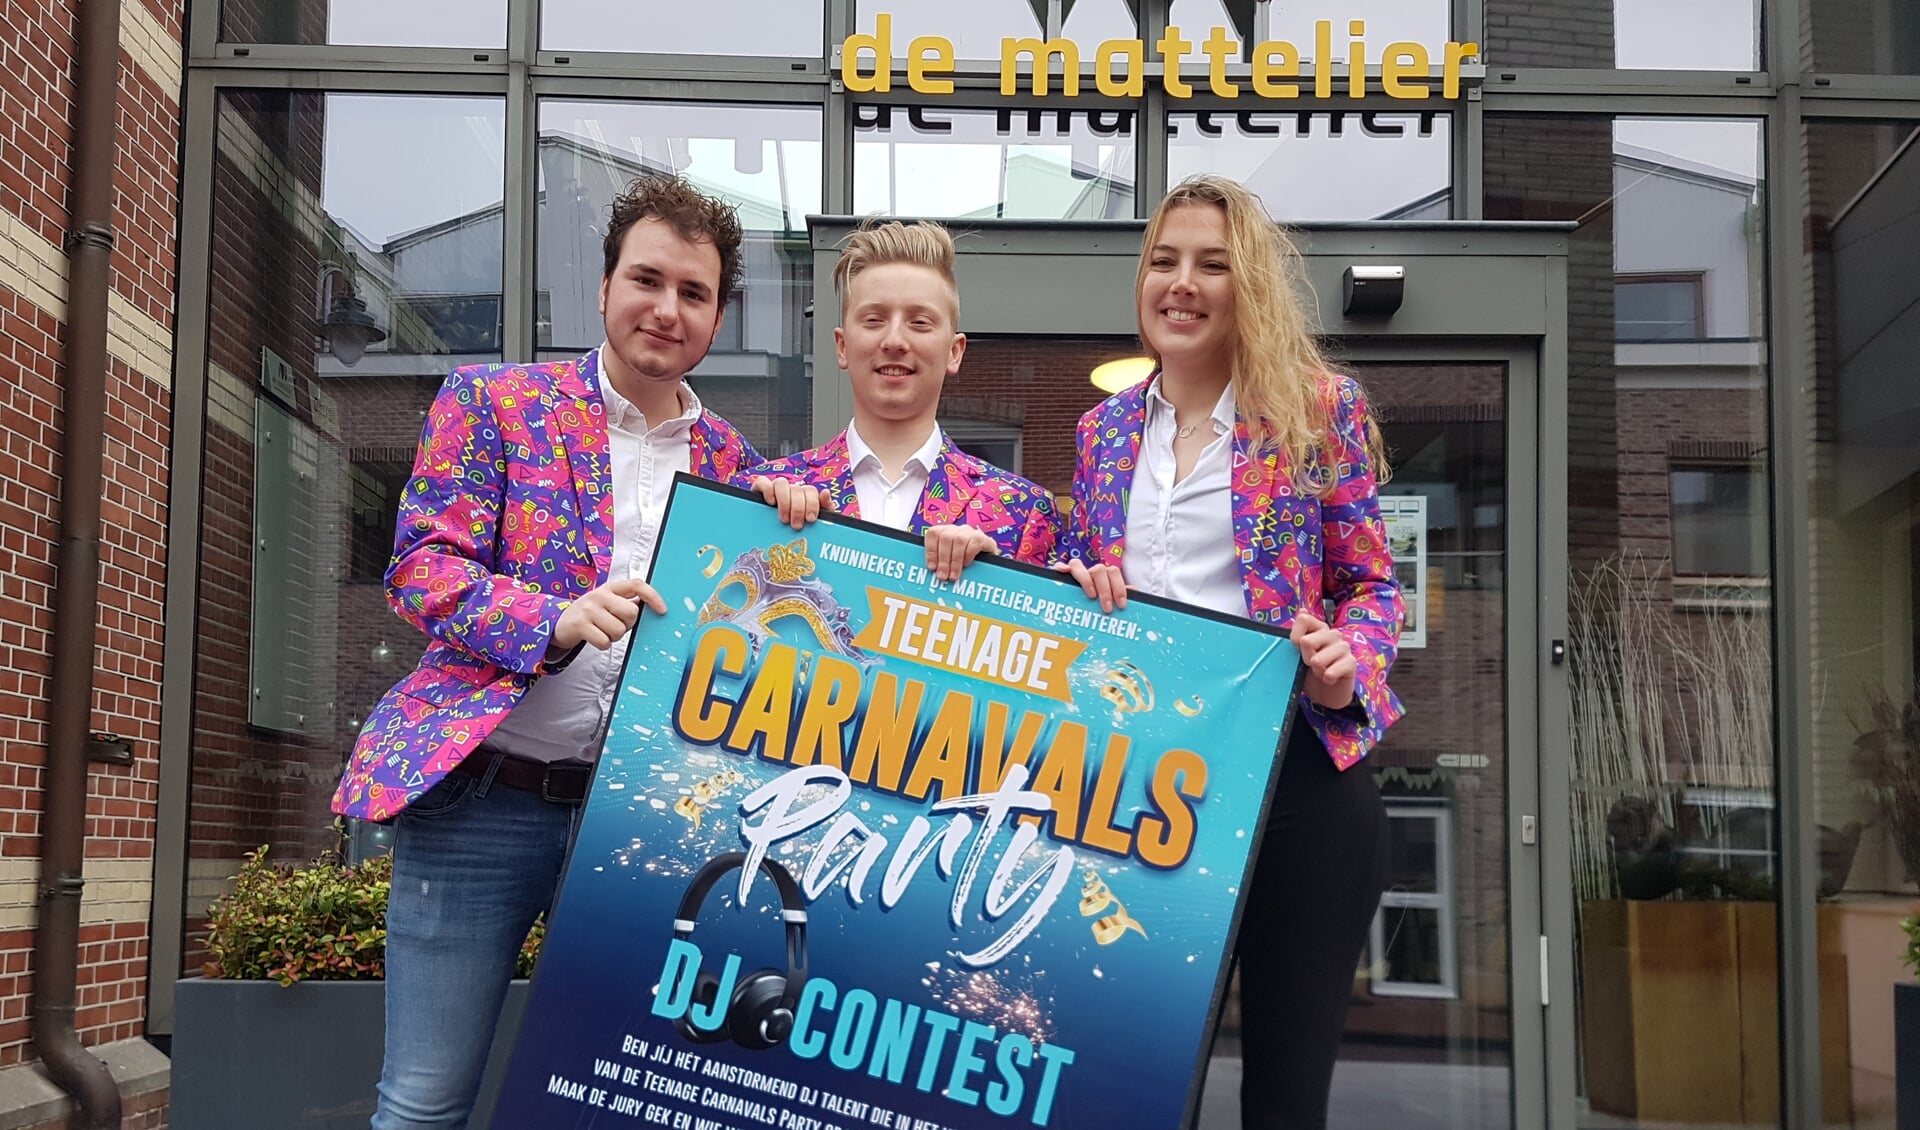 Vlnr: Corné Prins, Menno Huisman en Meg Nijenhuis verwachten dat het weer storm gaat lopen bij de DJ-contest.